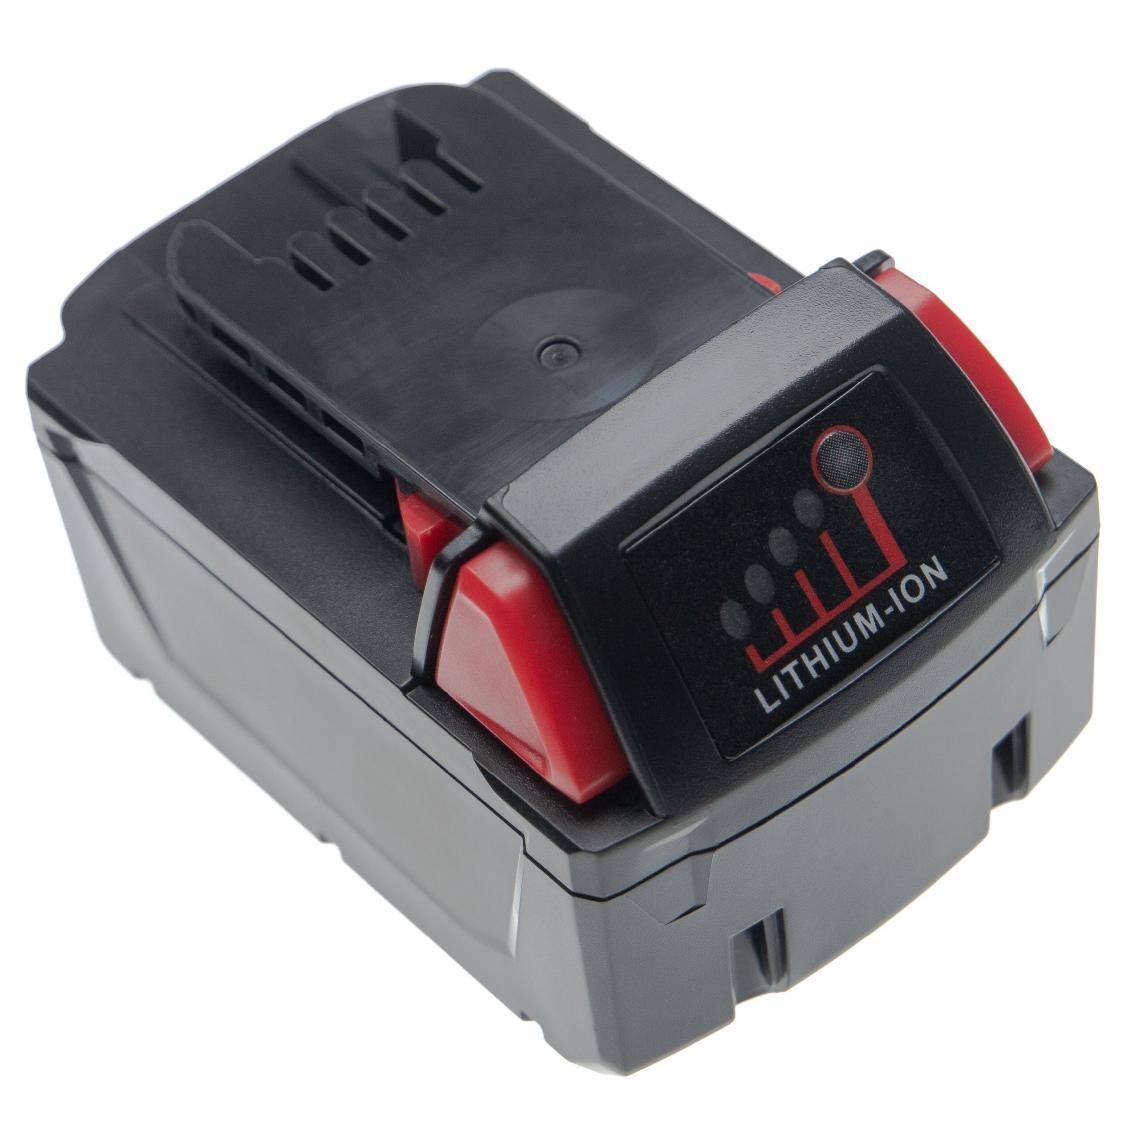 Vhbw - vhbw Batterie compatible avec Milwaukee 2705-20, 2706-20, 2707-20, 2708-20, 2709-20, 2711-20, 2712-20 outil électrique (4000mAh Li-ion 18V) - Accessoires vissage, perçage